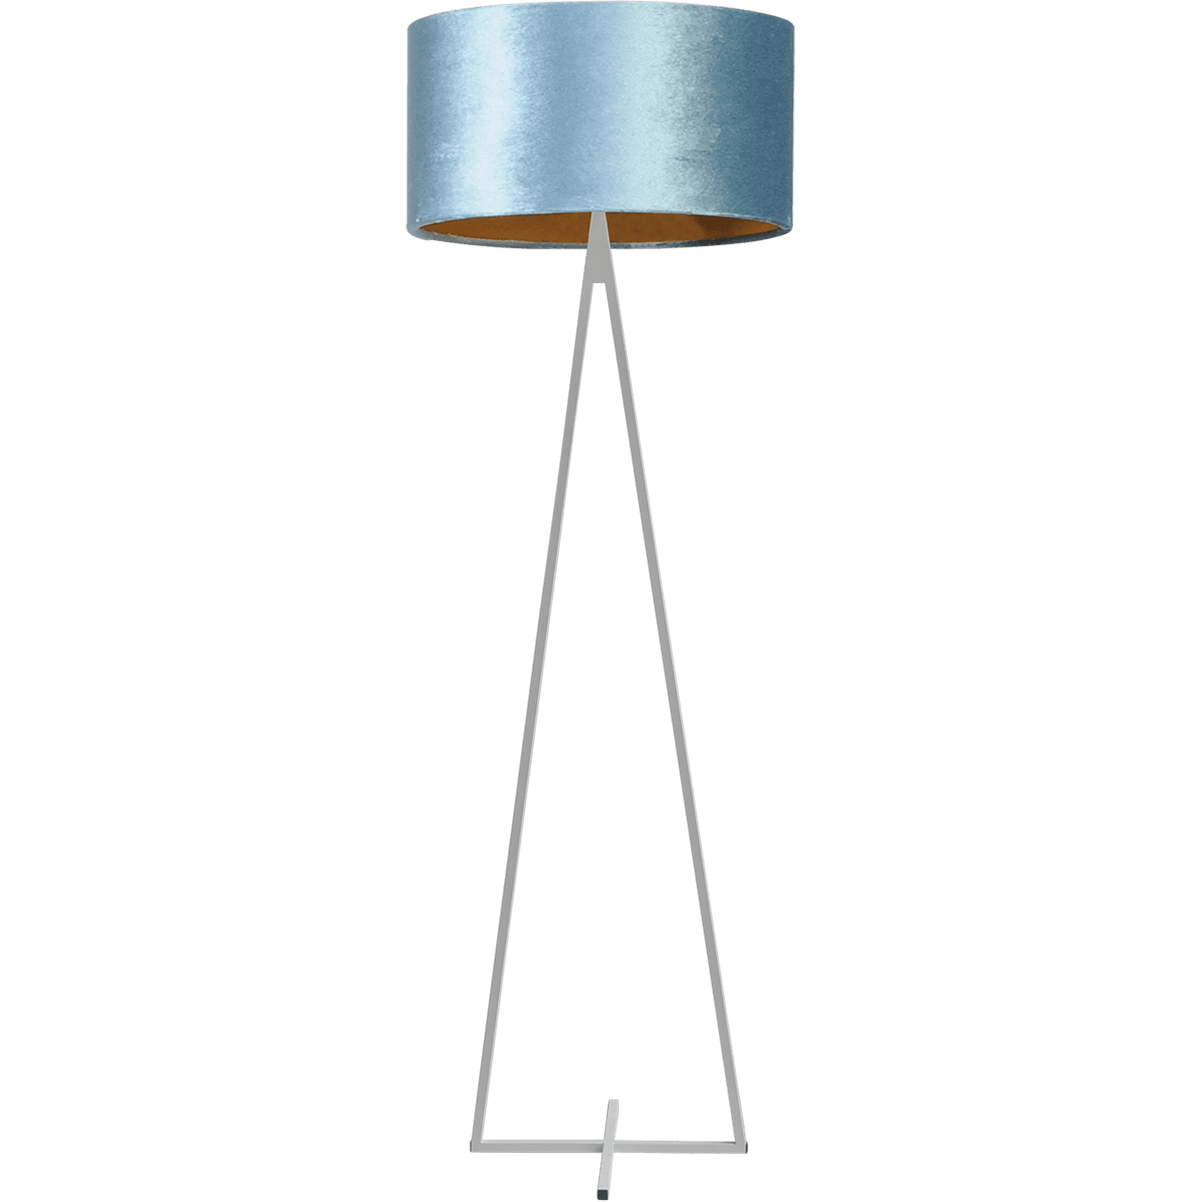 Vloerlamp Cross Triangle wit structuur hoogte 158cm inclusief blauwe lampenkap Artik blue 52/52/25 - MASTERLIGHT